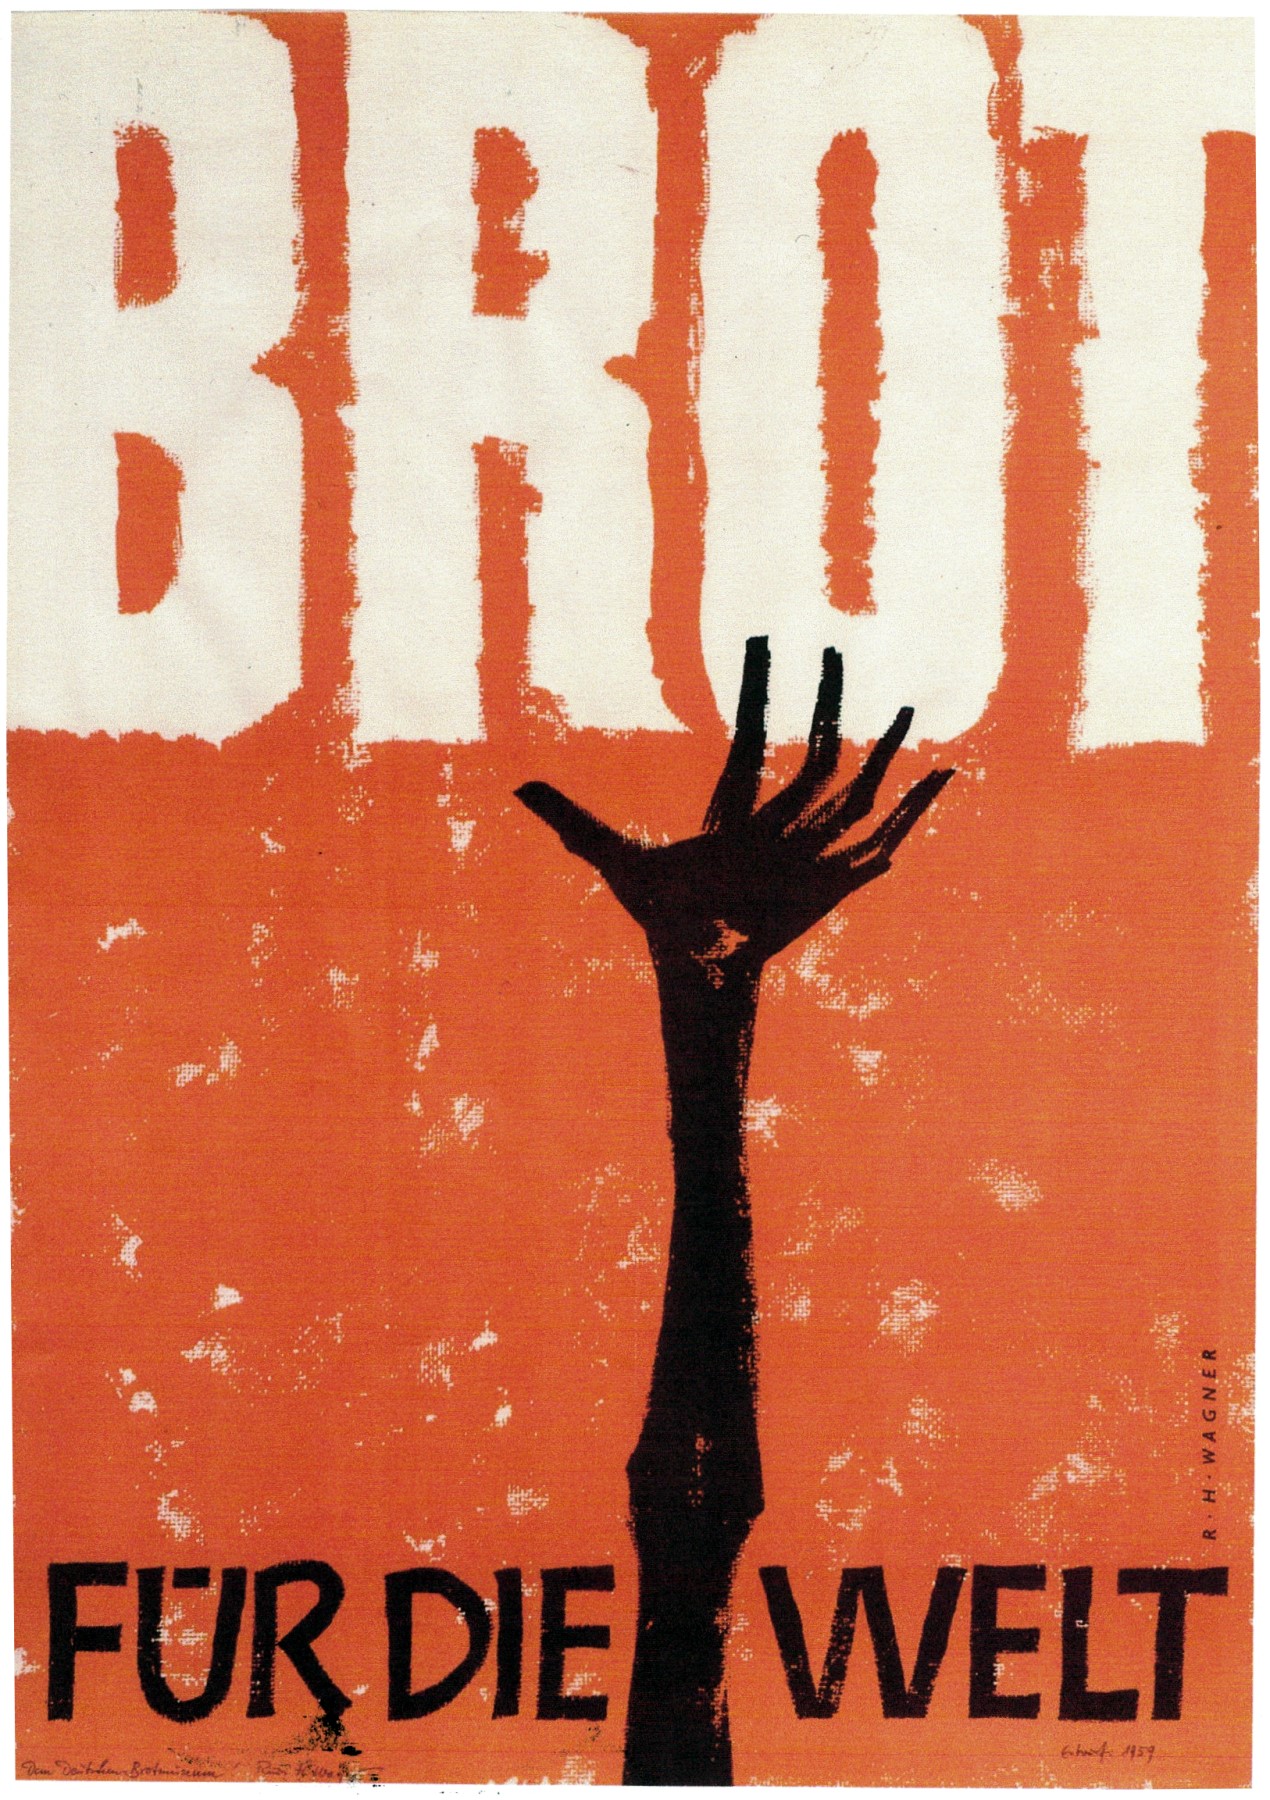 Plakat, Aktion Brot für die Welt, Evangelische Kirche Deutschland, Rudi H. Wagner, 1959, © Museum der Brotkultur Ulm